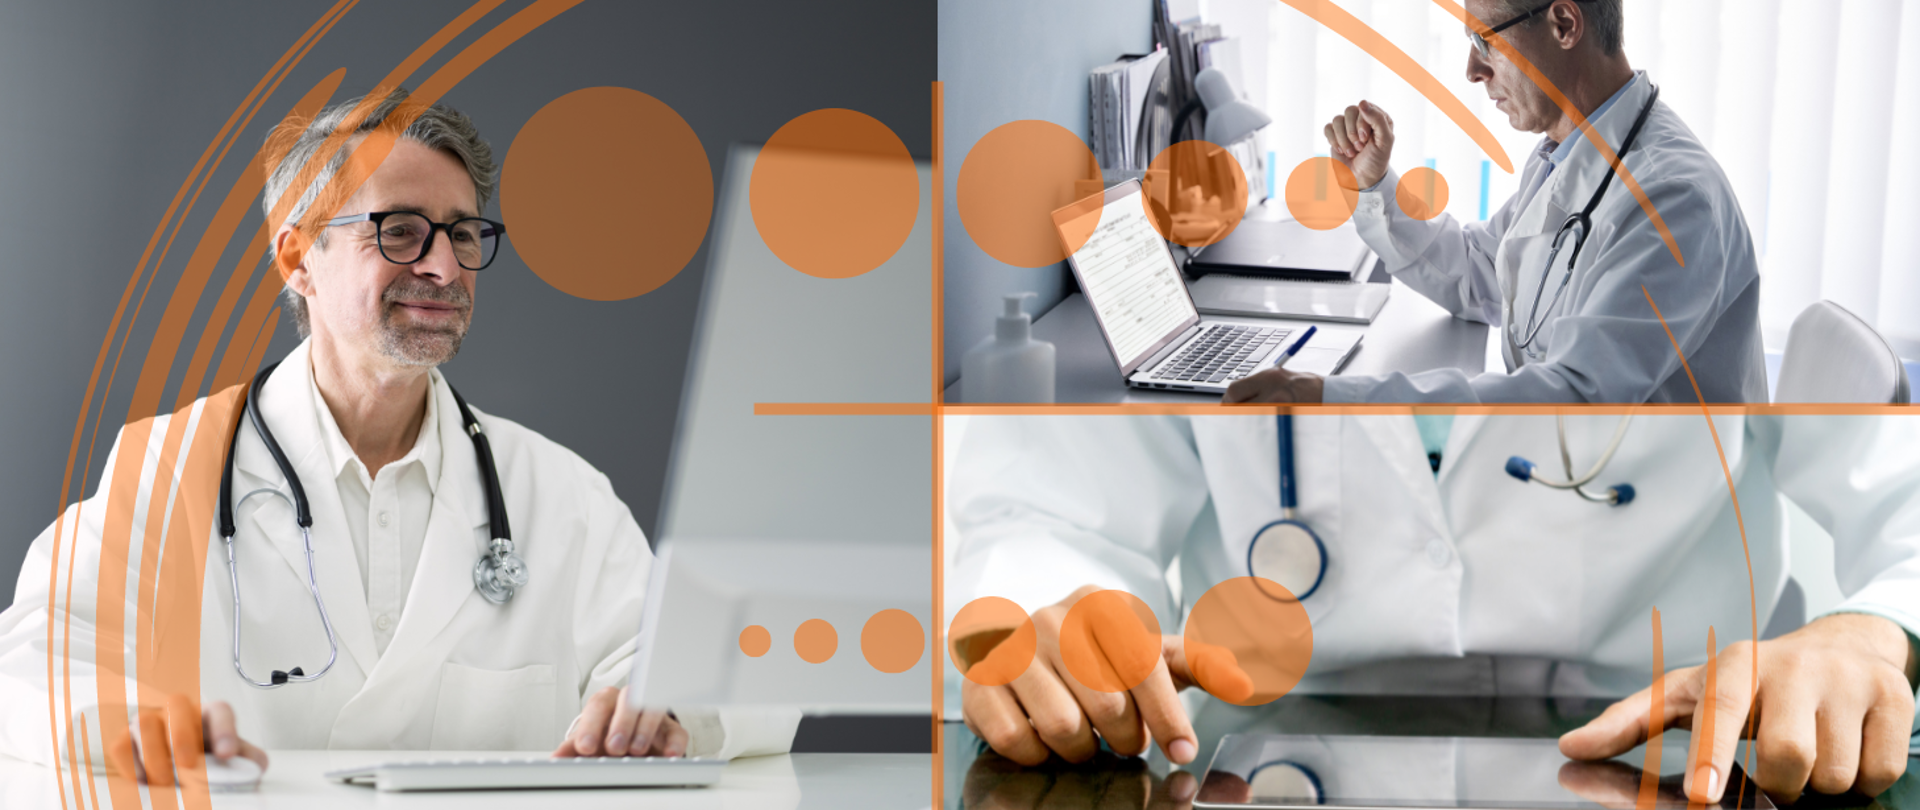 Ilustracja zawiera trzy zdjęcia lekarzy pracujących przy komputerach i na tablecie.